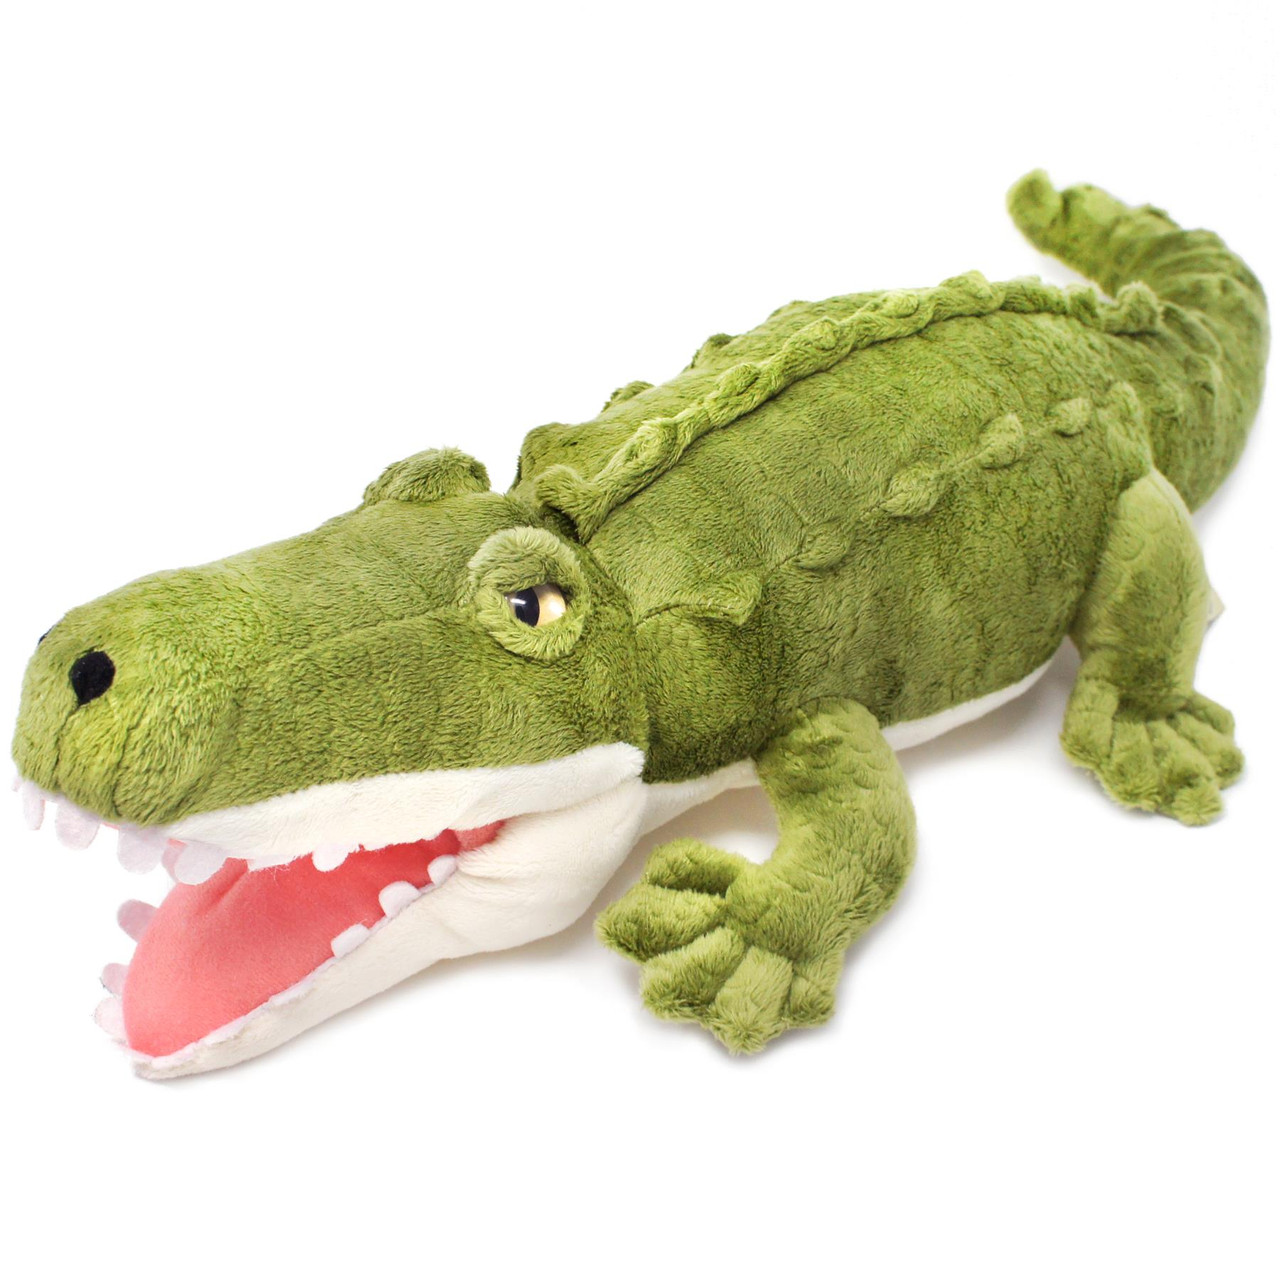 Stuffed Crocodile Backpack